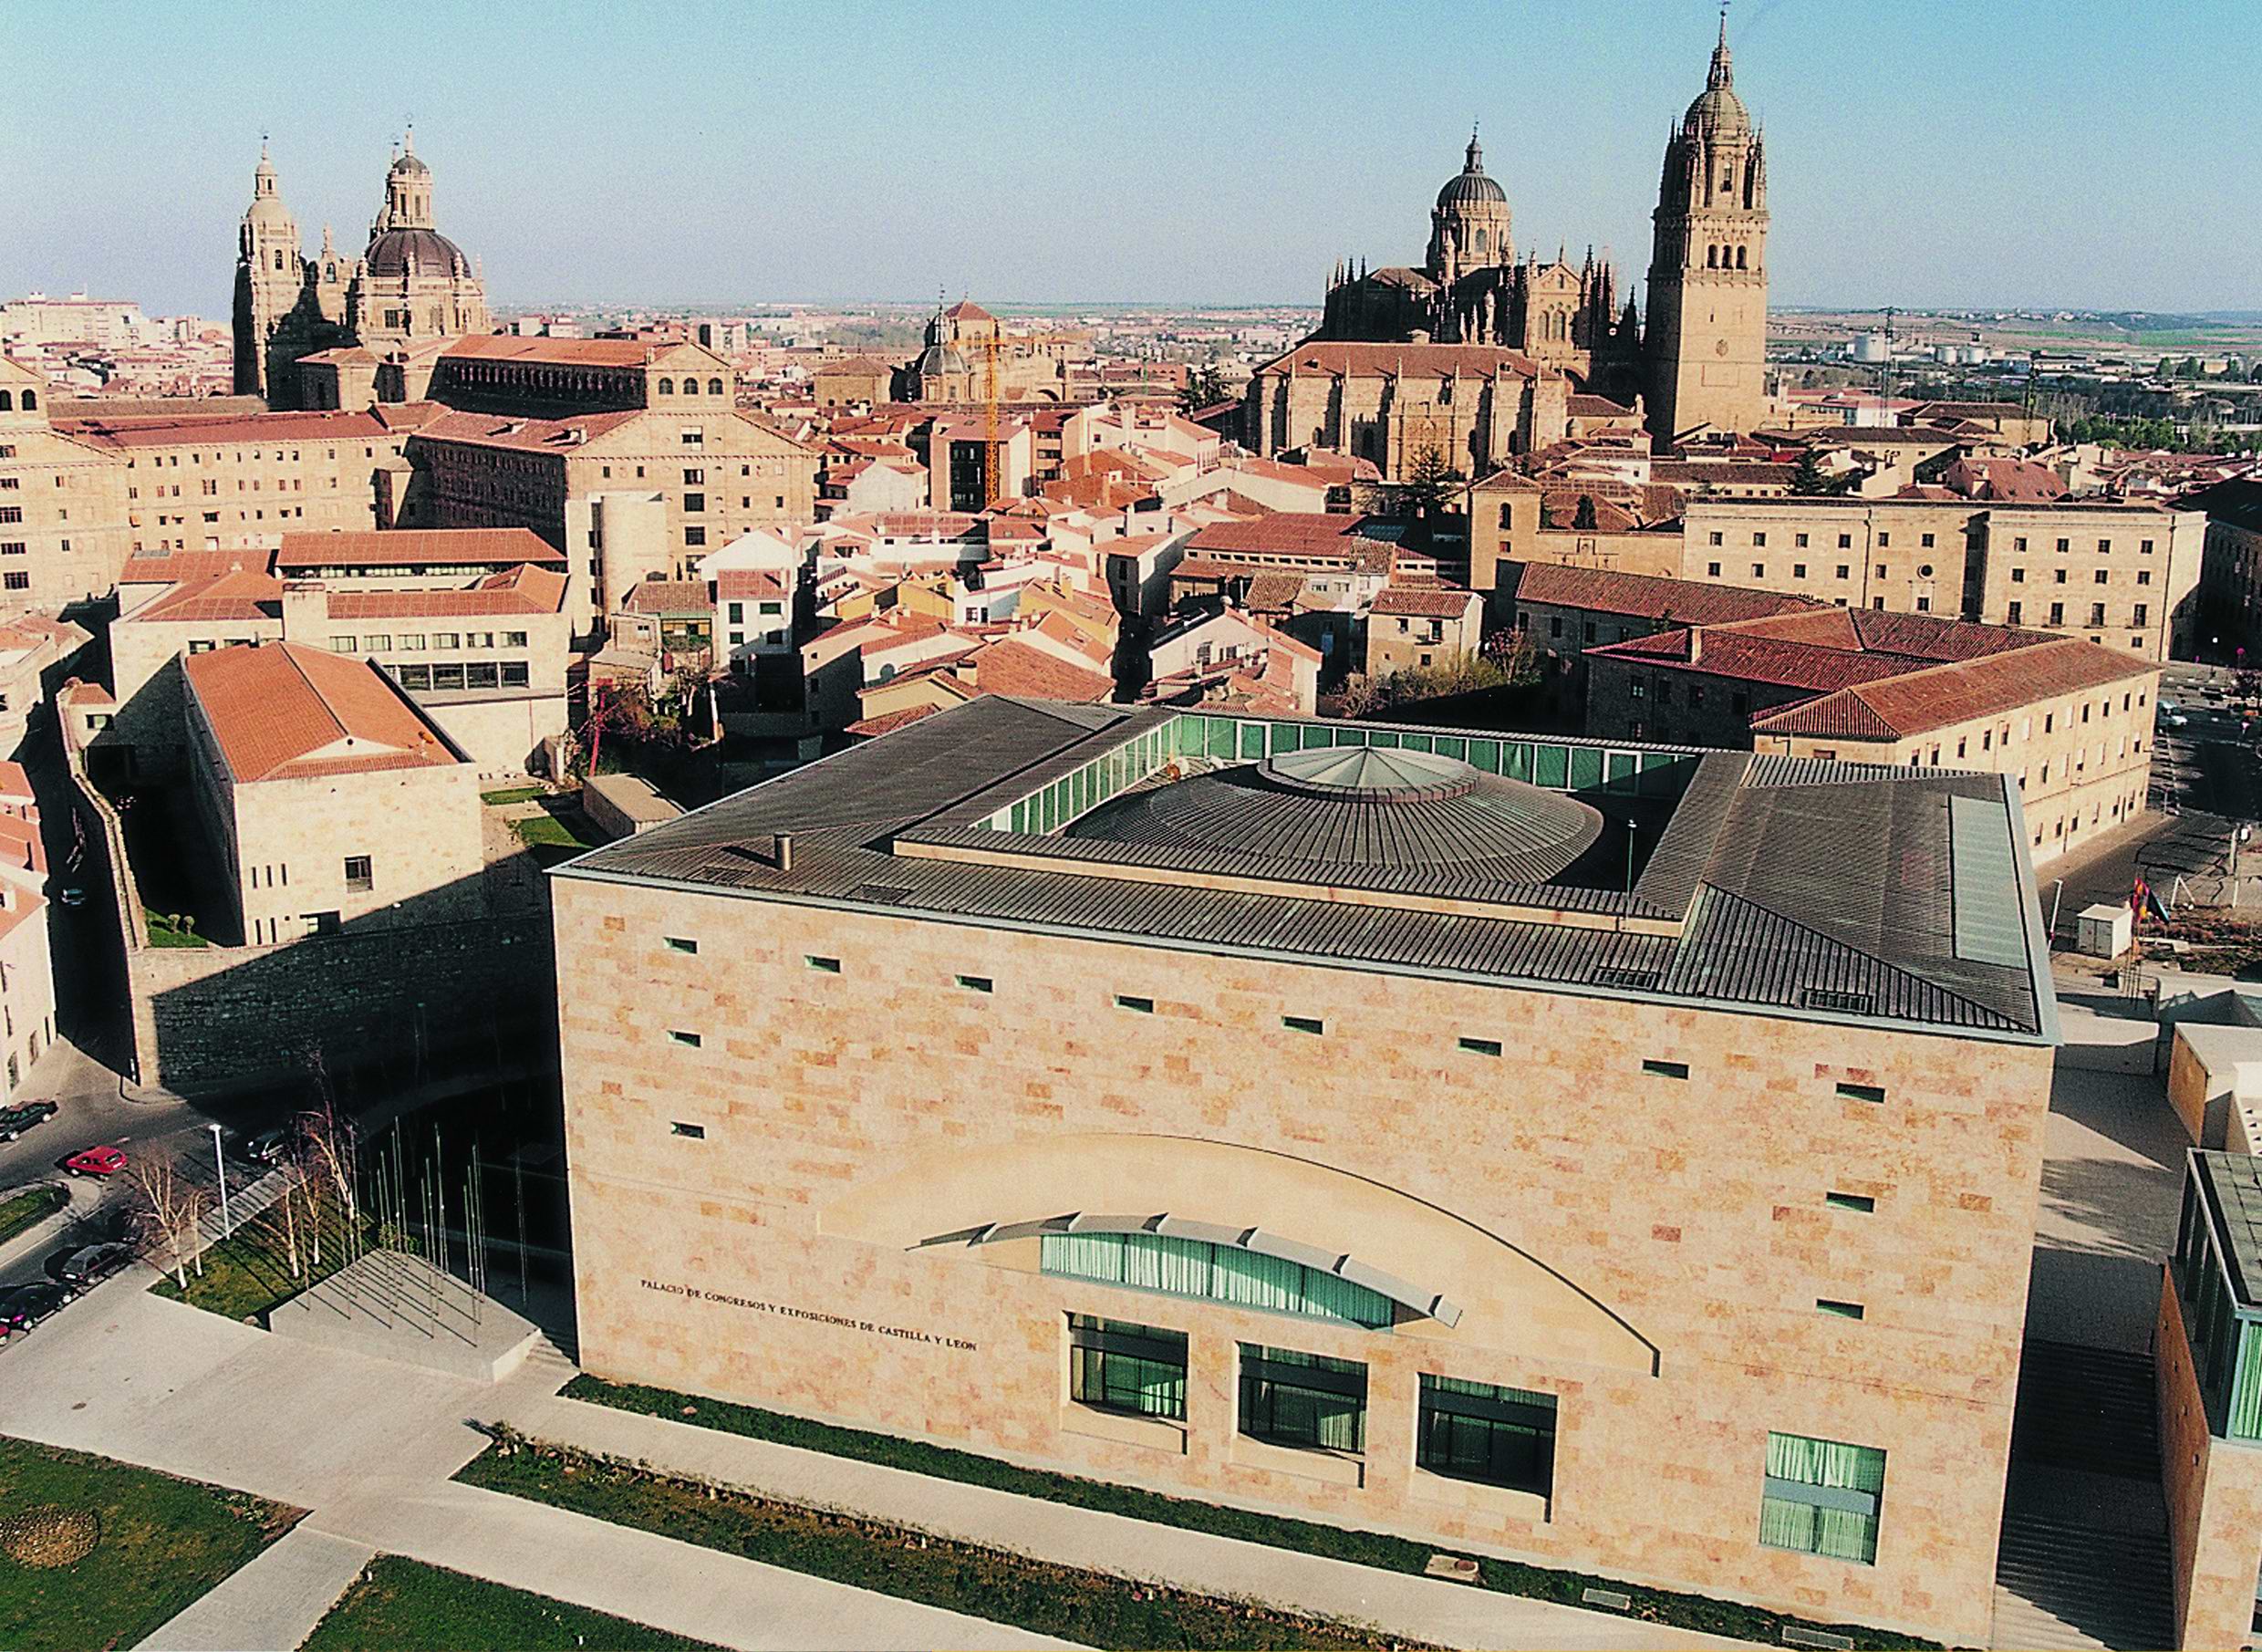 Ubicación del Palacio de Congresos de Salamanca